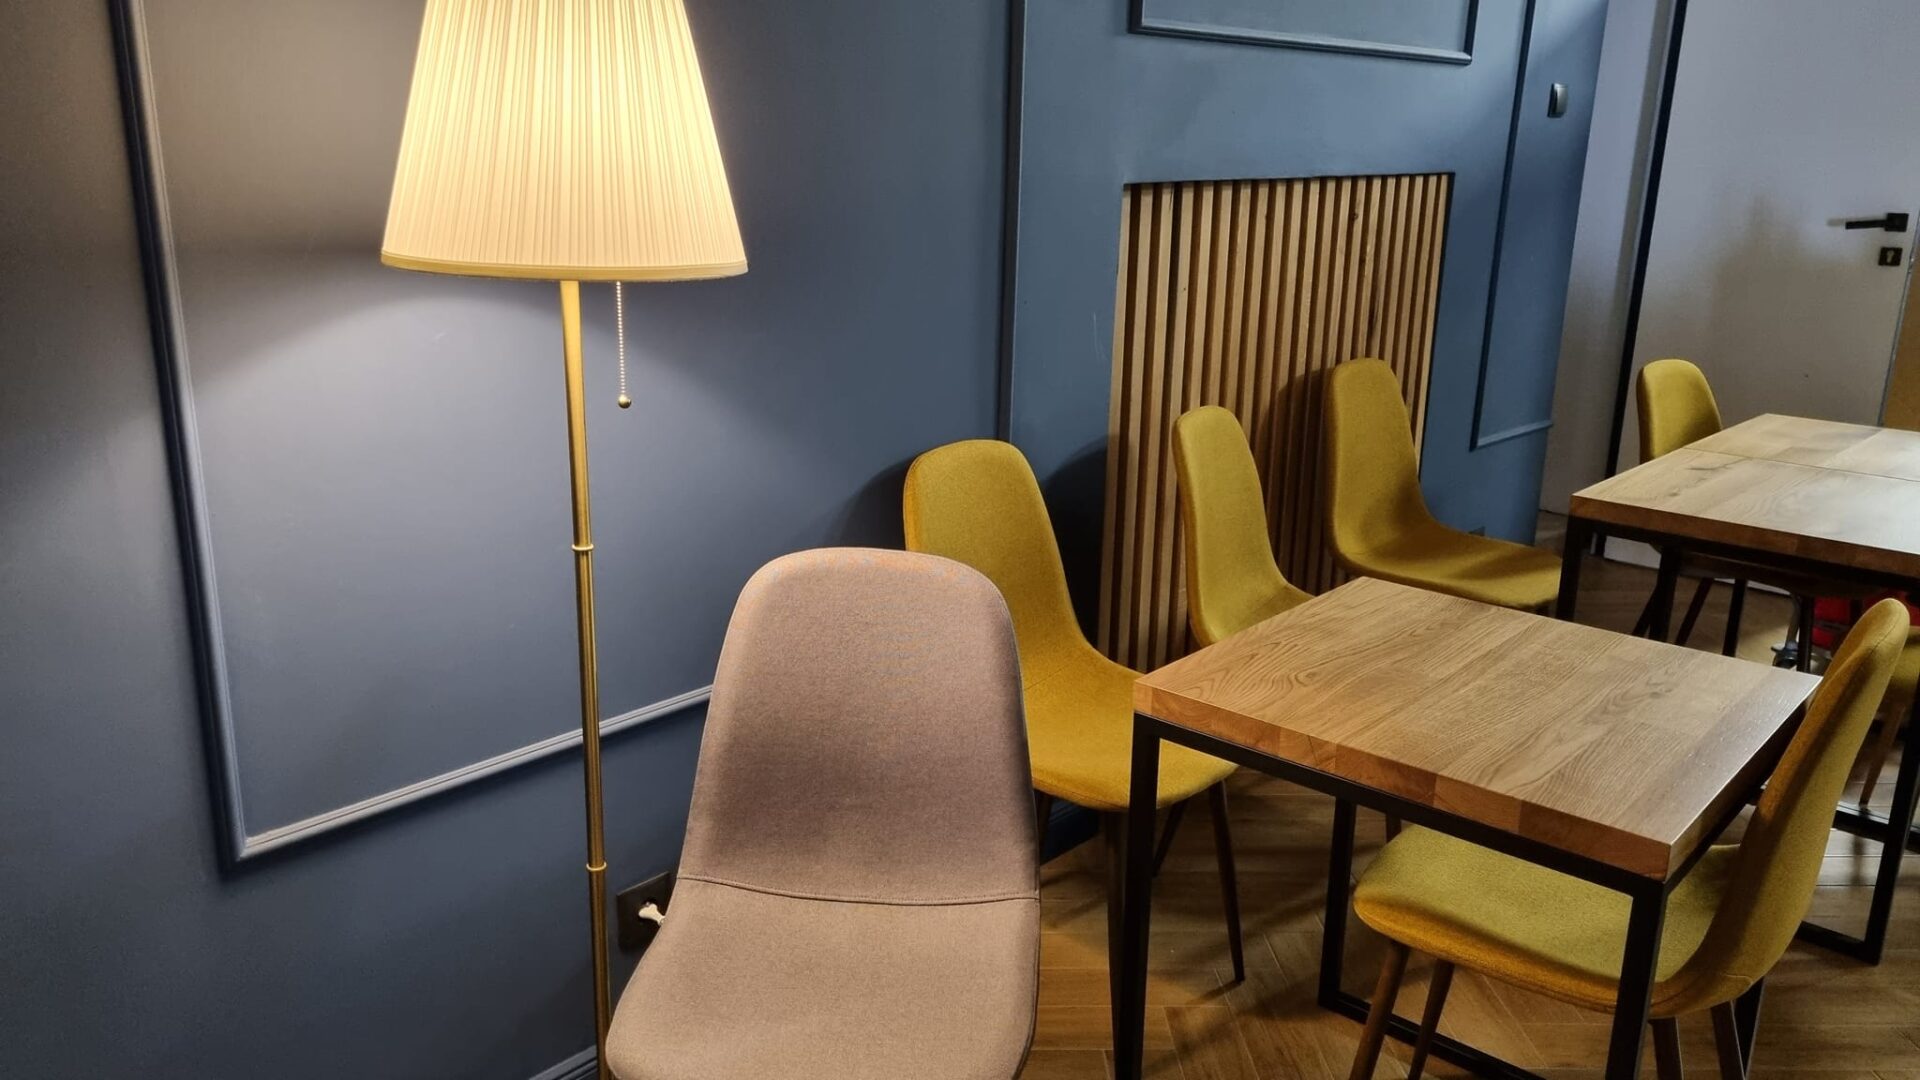 stoły i krzesła we wnętrzu nowej kawiarni w kinie Hel w Pleszewie.